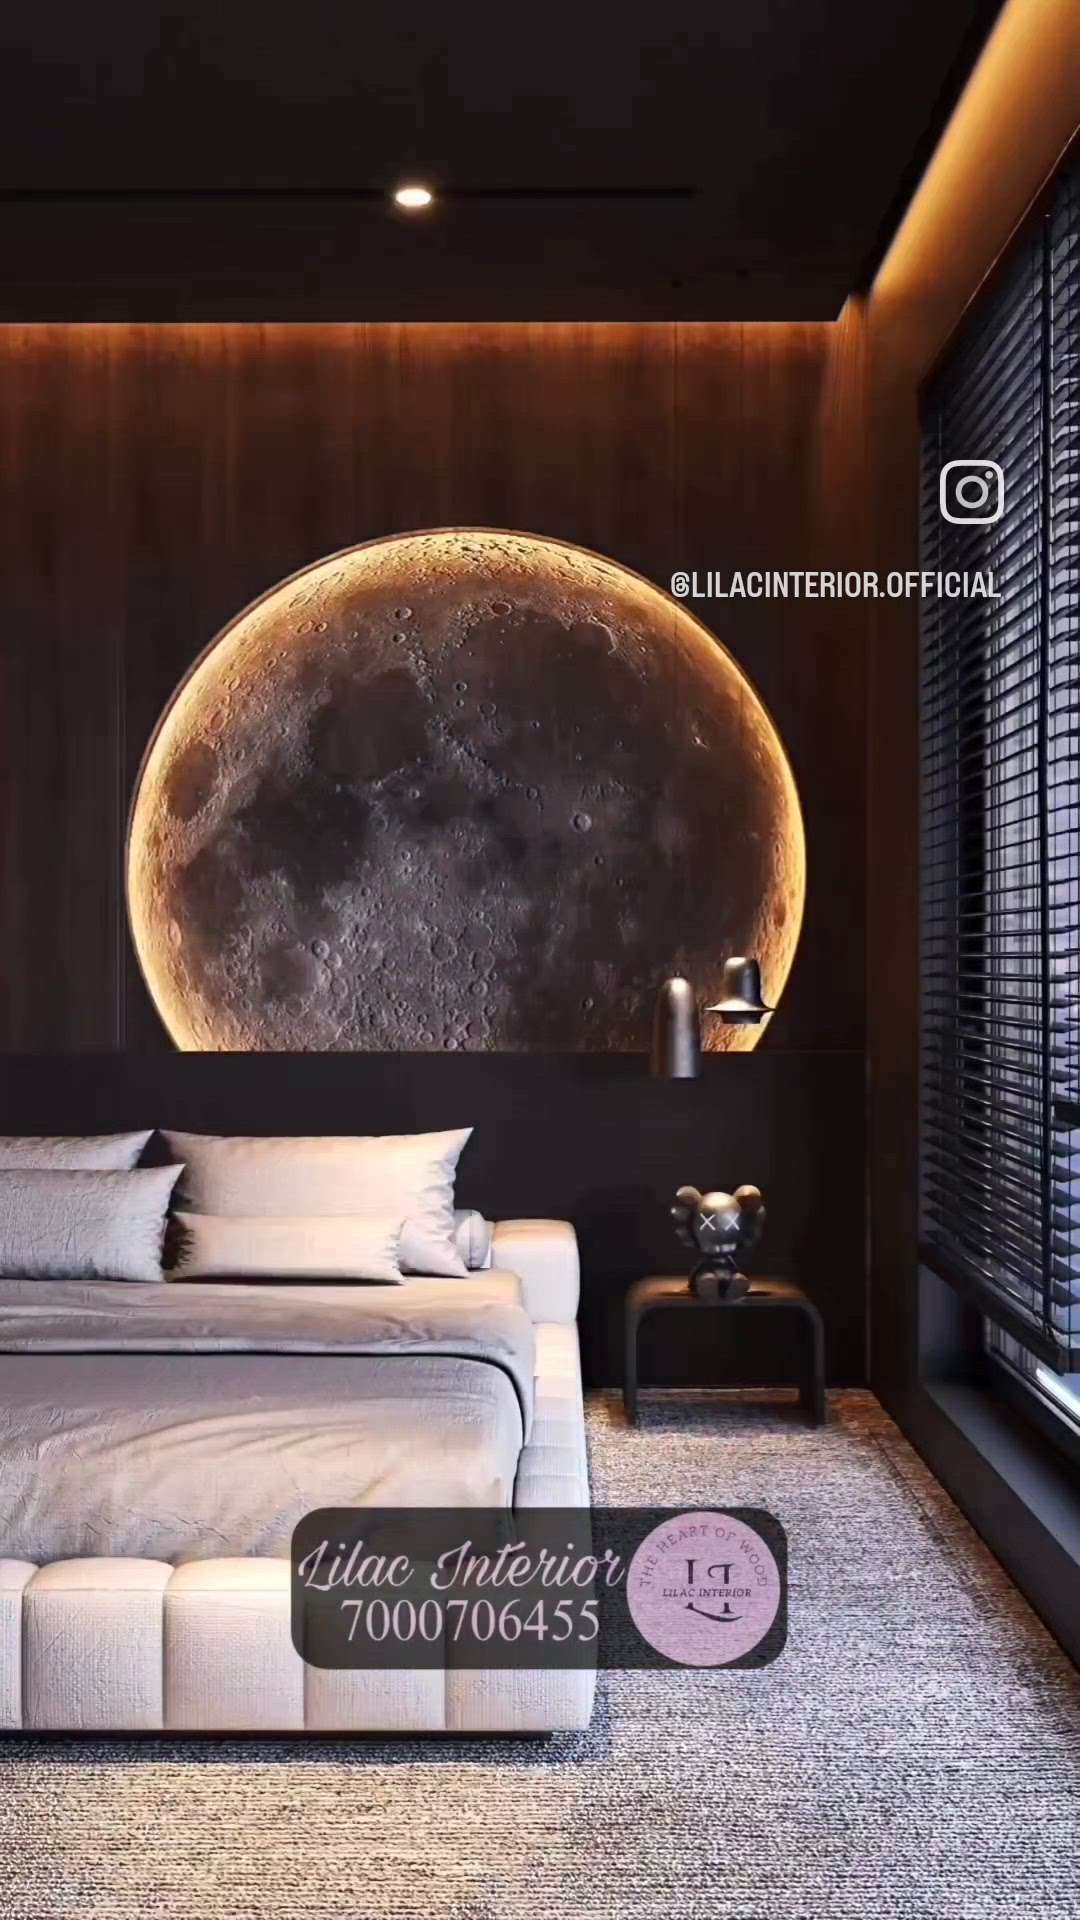 Luxury Bedroom with Moon 🌝
By Lilac Interior 🤩

#bedroommodification
#bedroomfloor
#LUXURY_INTERIOR
#LUXURY_BED
#luxuryinterior
#luxurybedroom
#luxuryhomedecore
#classybedroom #classybed #classyinteriors #moon #moonbacklight #moonlight #moonlovers #classy #BedroomIdea #bedroomreels #reelsinstagram #reelsinsta #reelsindia #moonreels #reels #gurgaon #gurgaonproject #gurugram #gurugramproperty